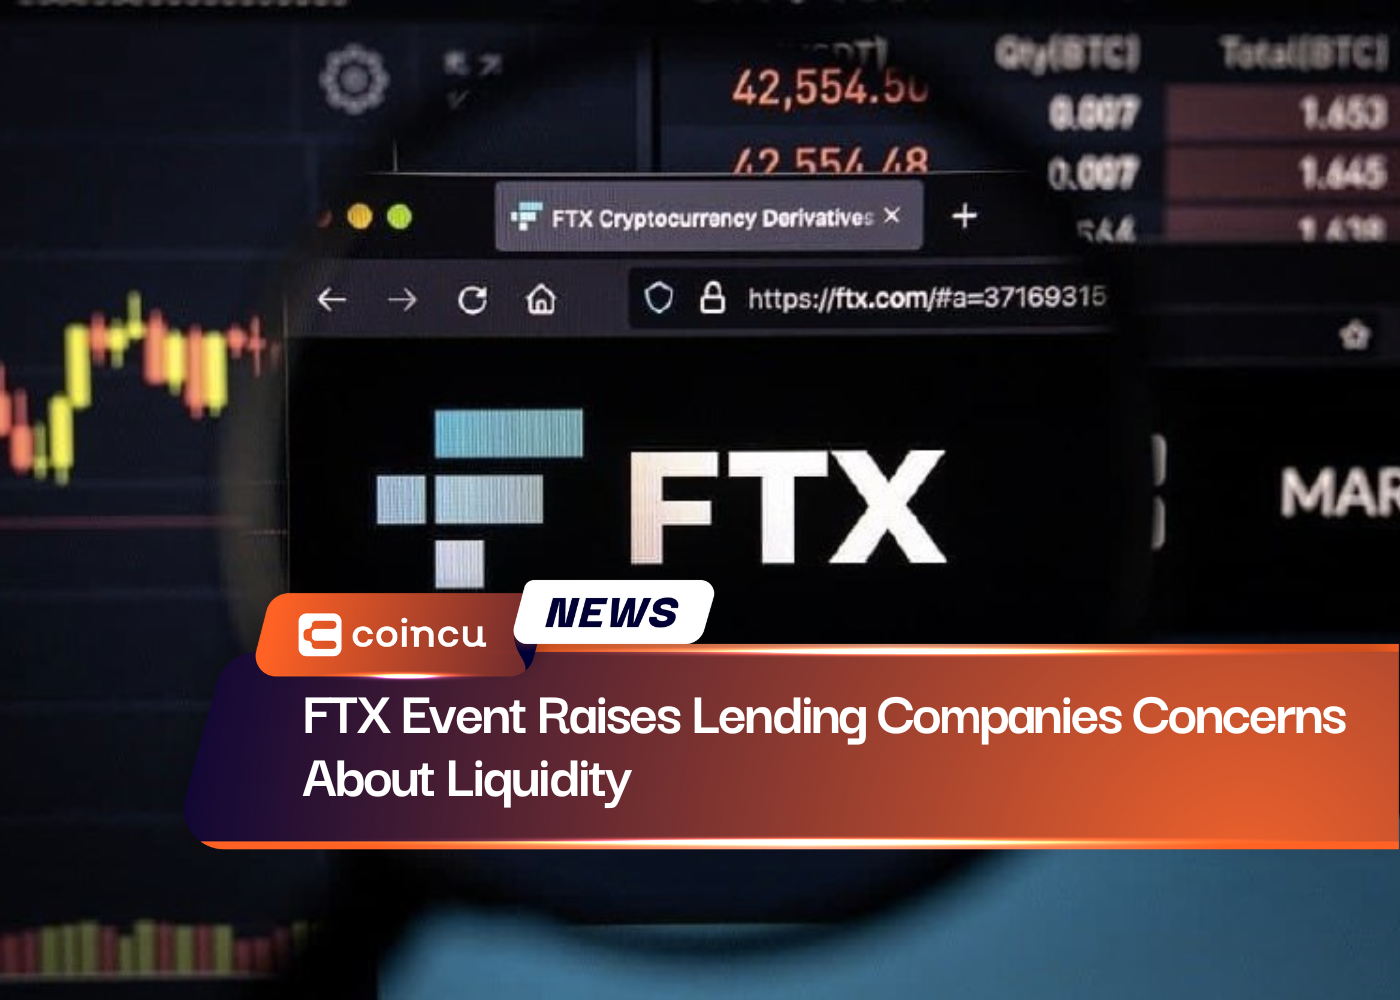 Evento FTX levanta preocupações de empresas de crédito sobre liquidez